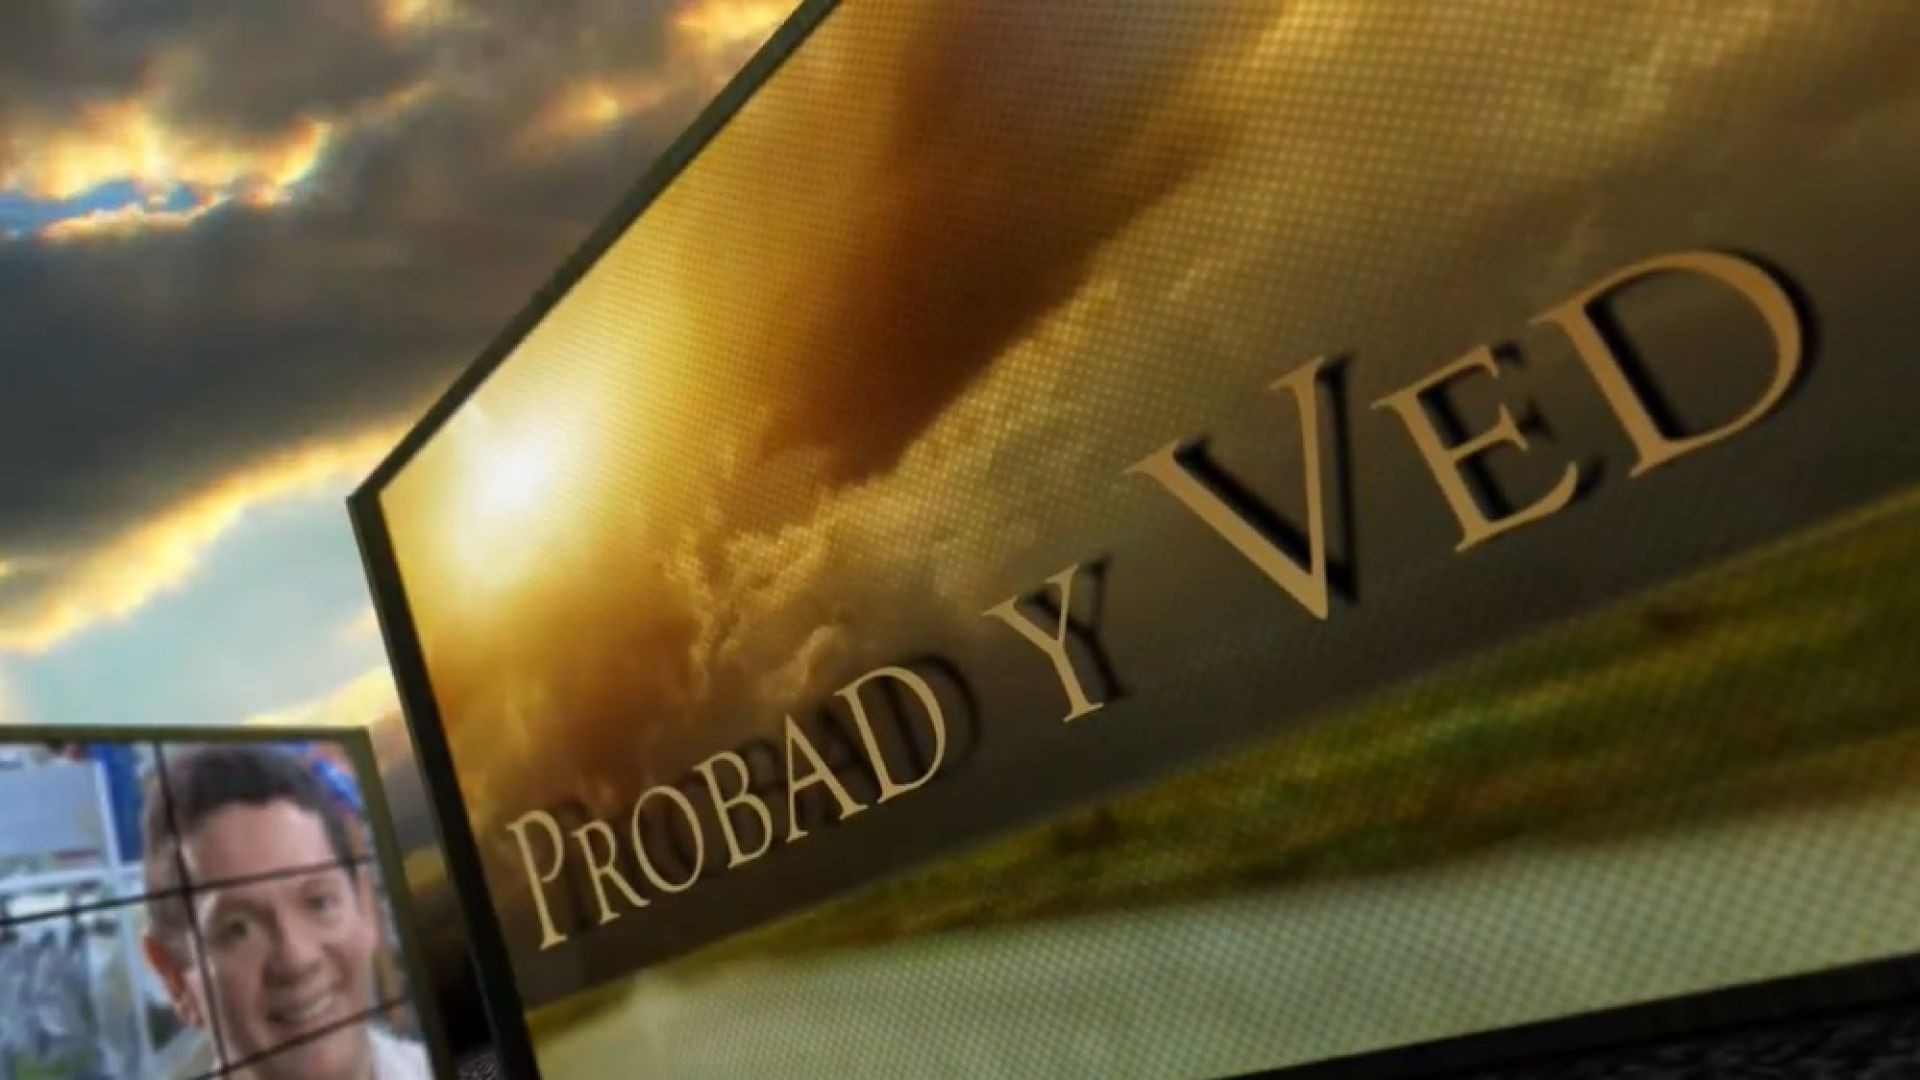 Probad y Ved 2013 - Milagros de Dios - 6/Abr